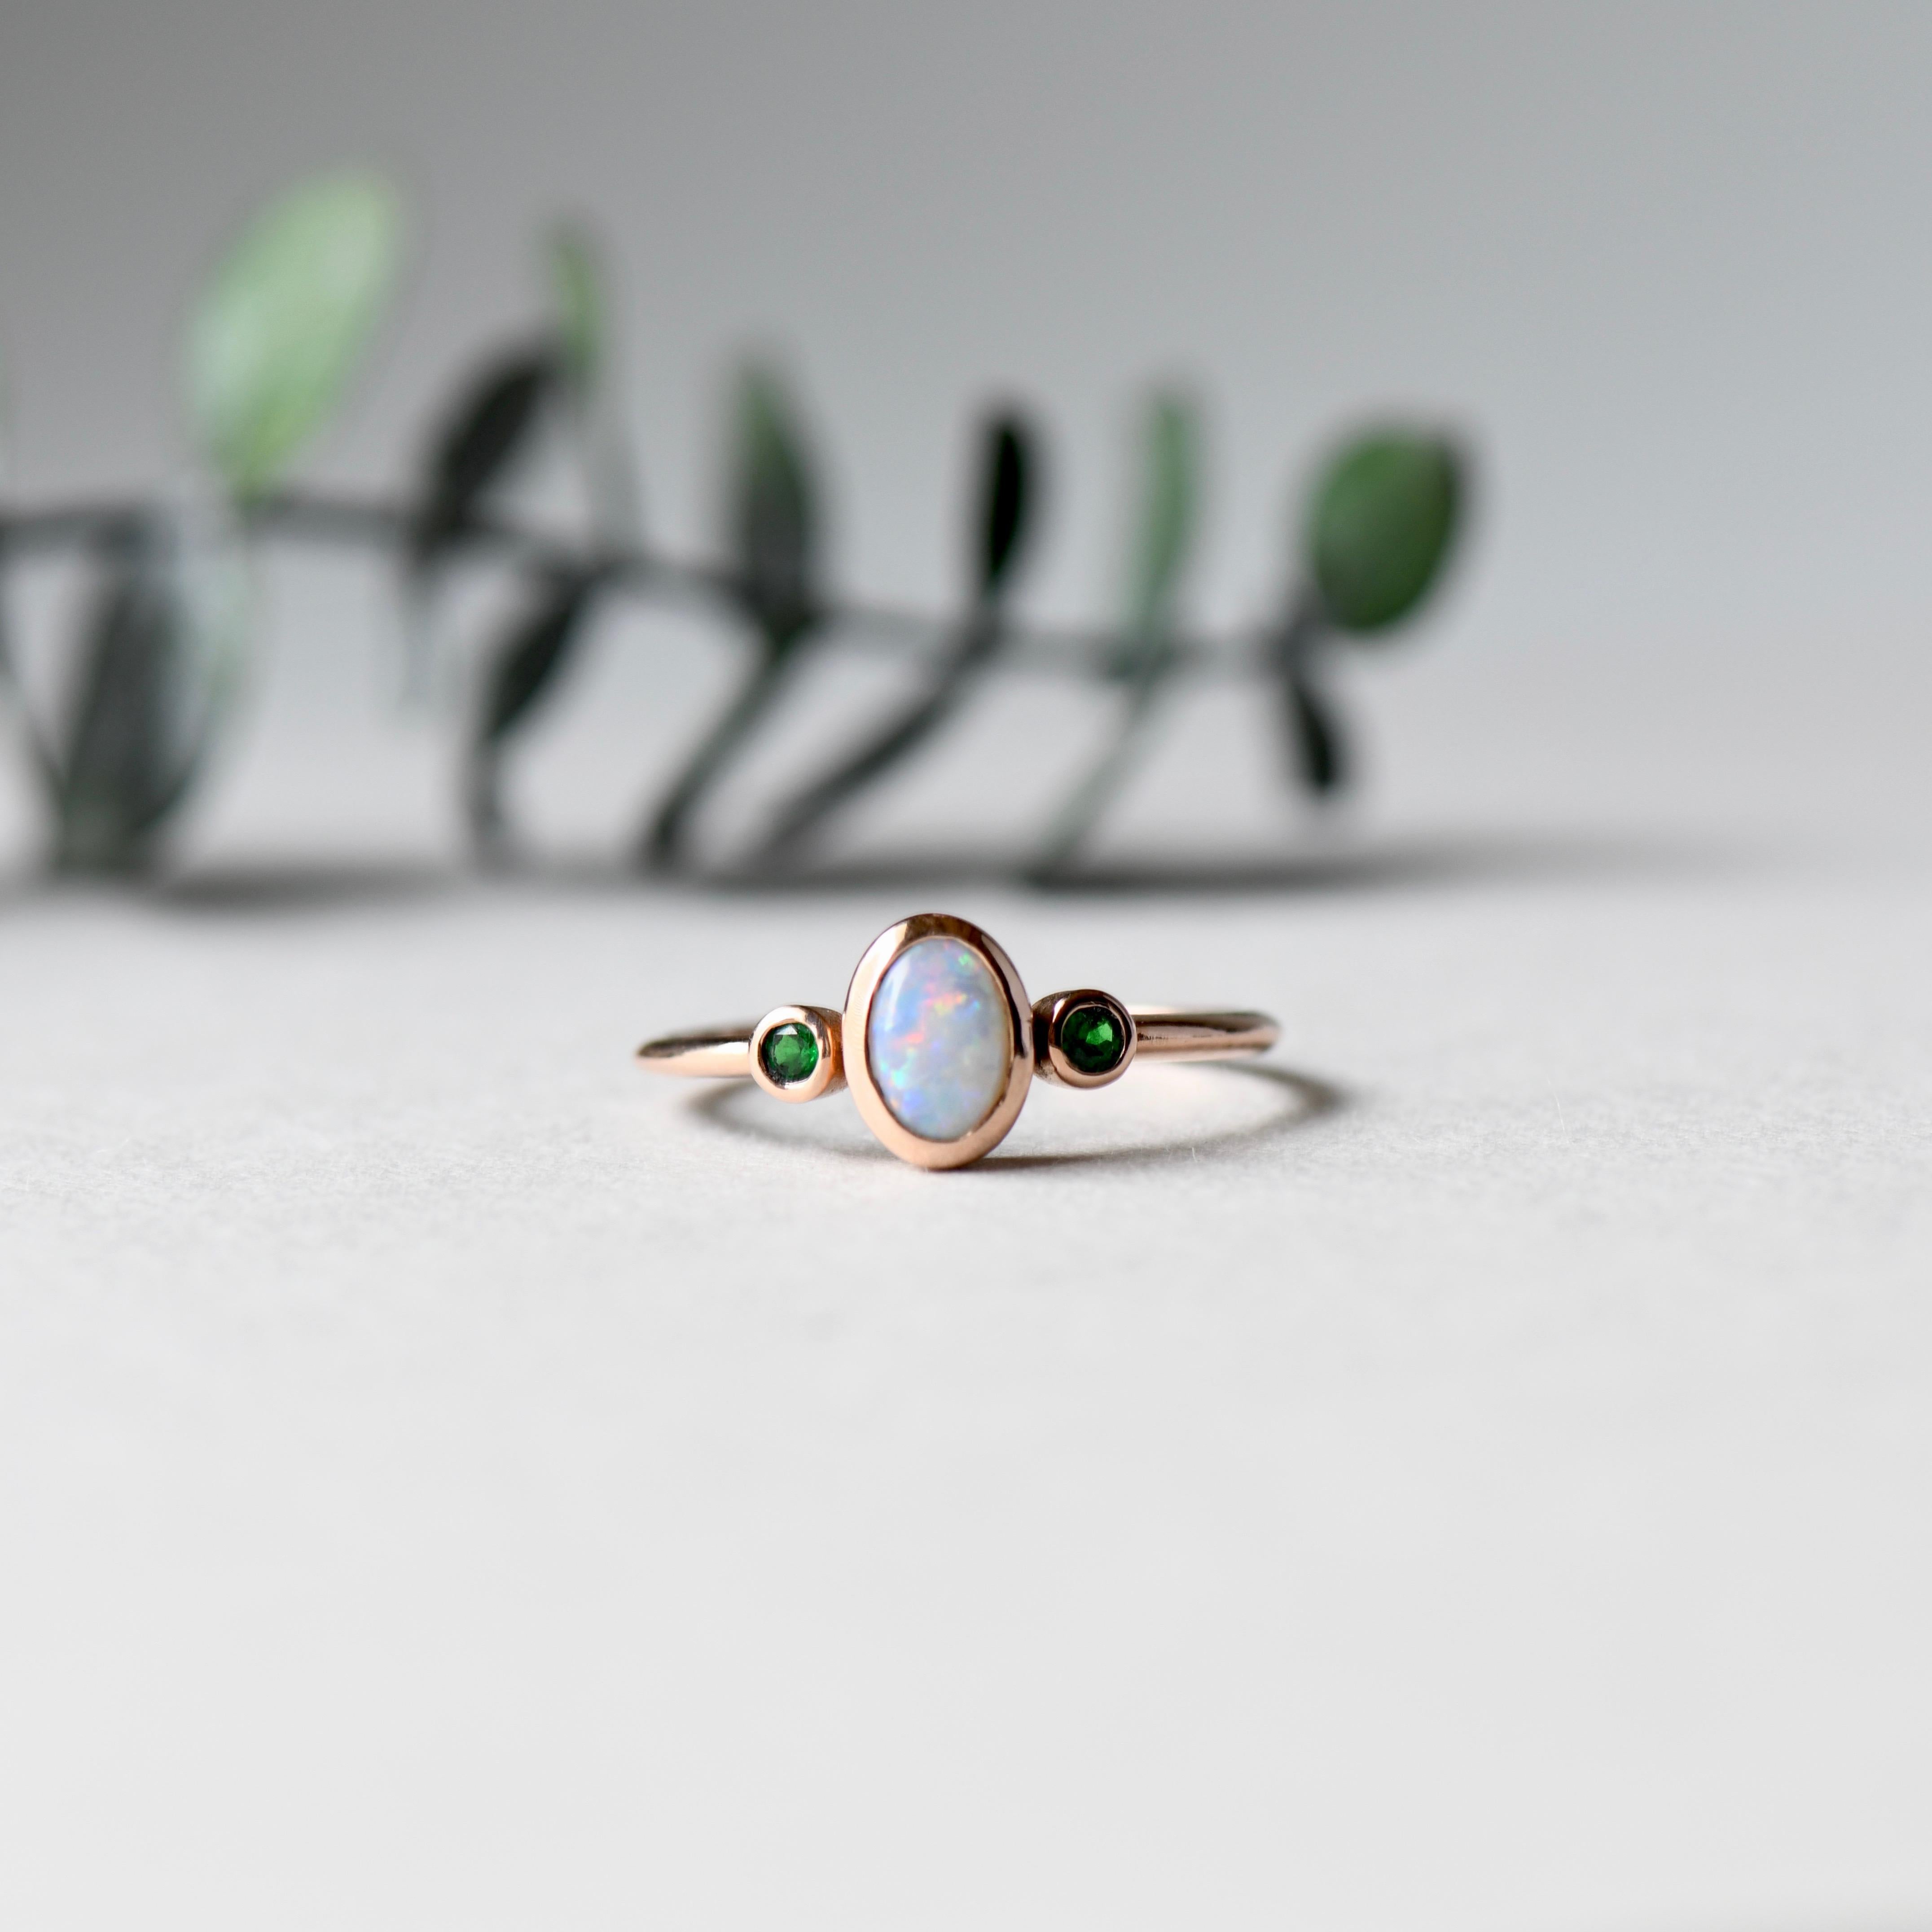 what do opals symbolize